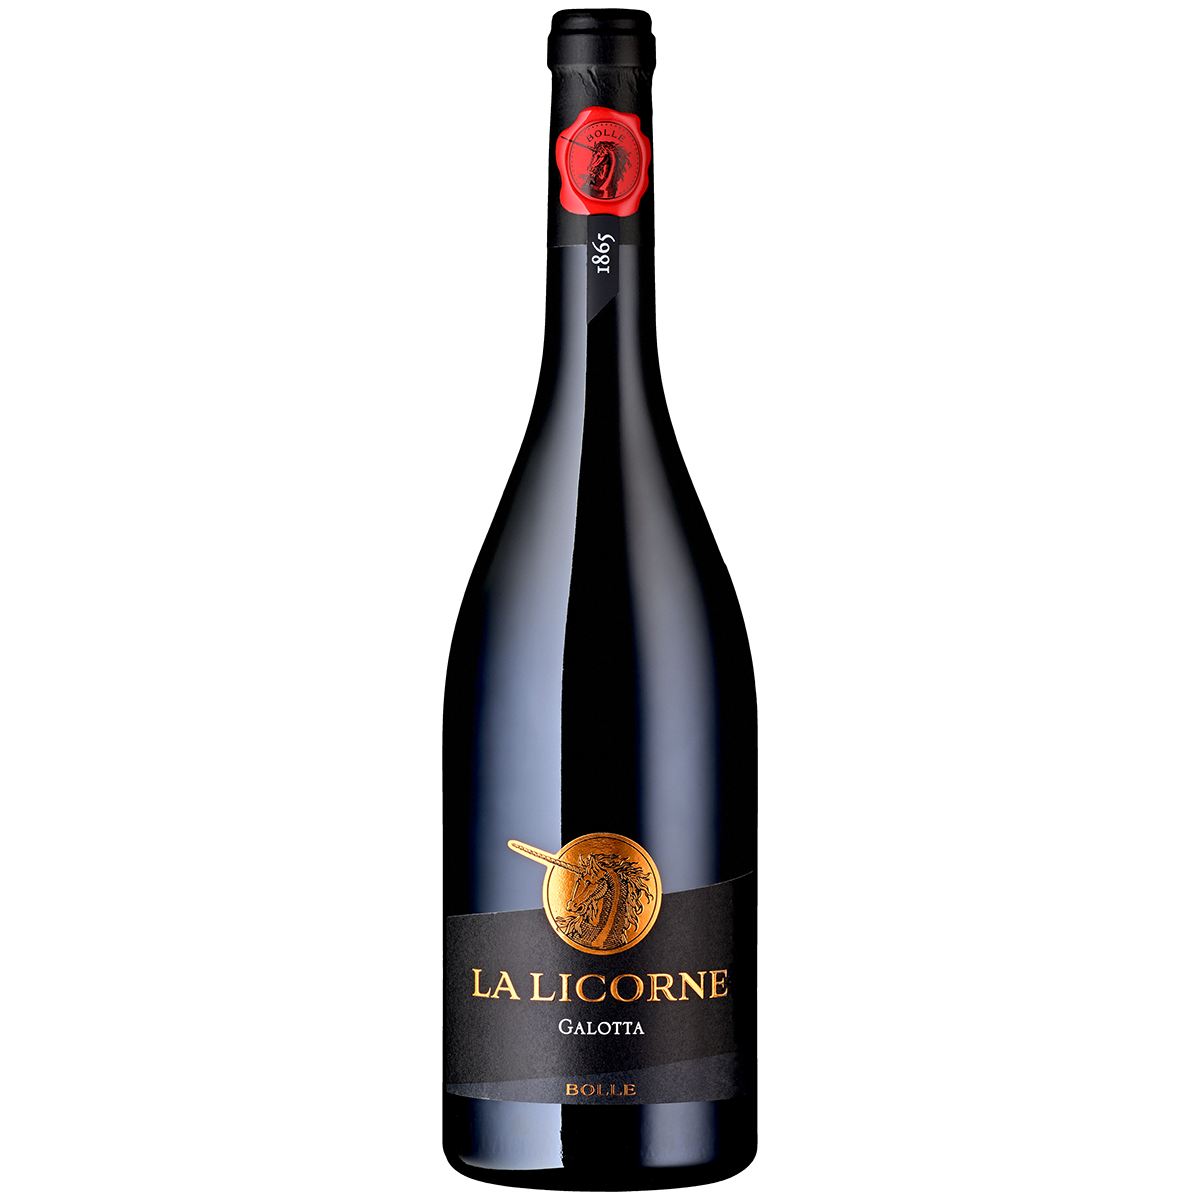 La Licorne Galotta vin Bolle